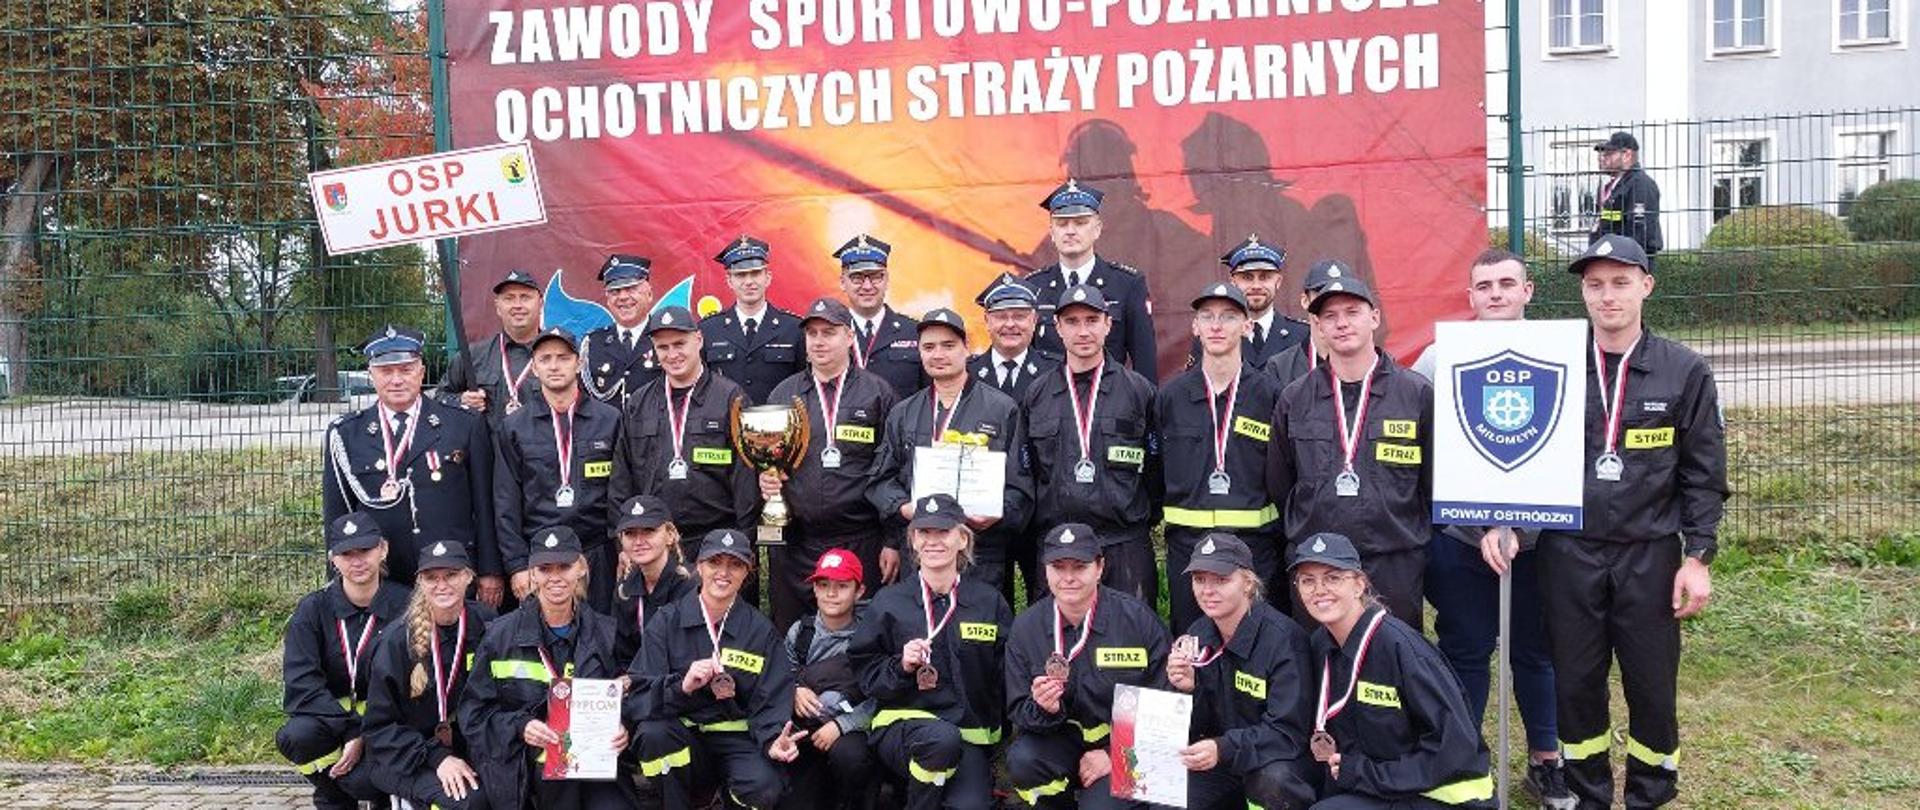 Pamiątkowe zdjęcie drużyn z powiatu ostródzkiego.